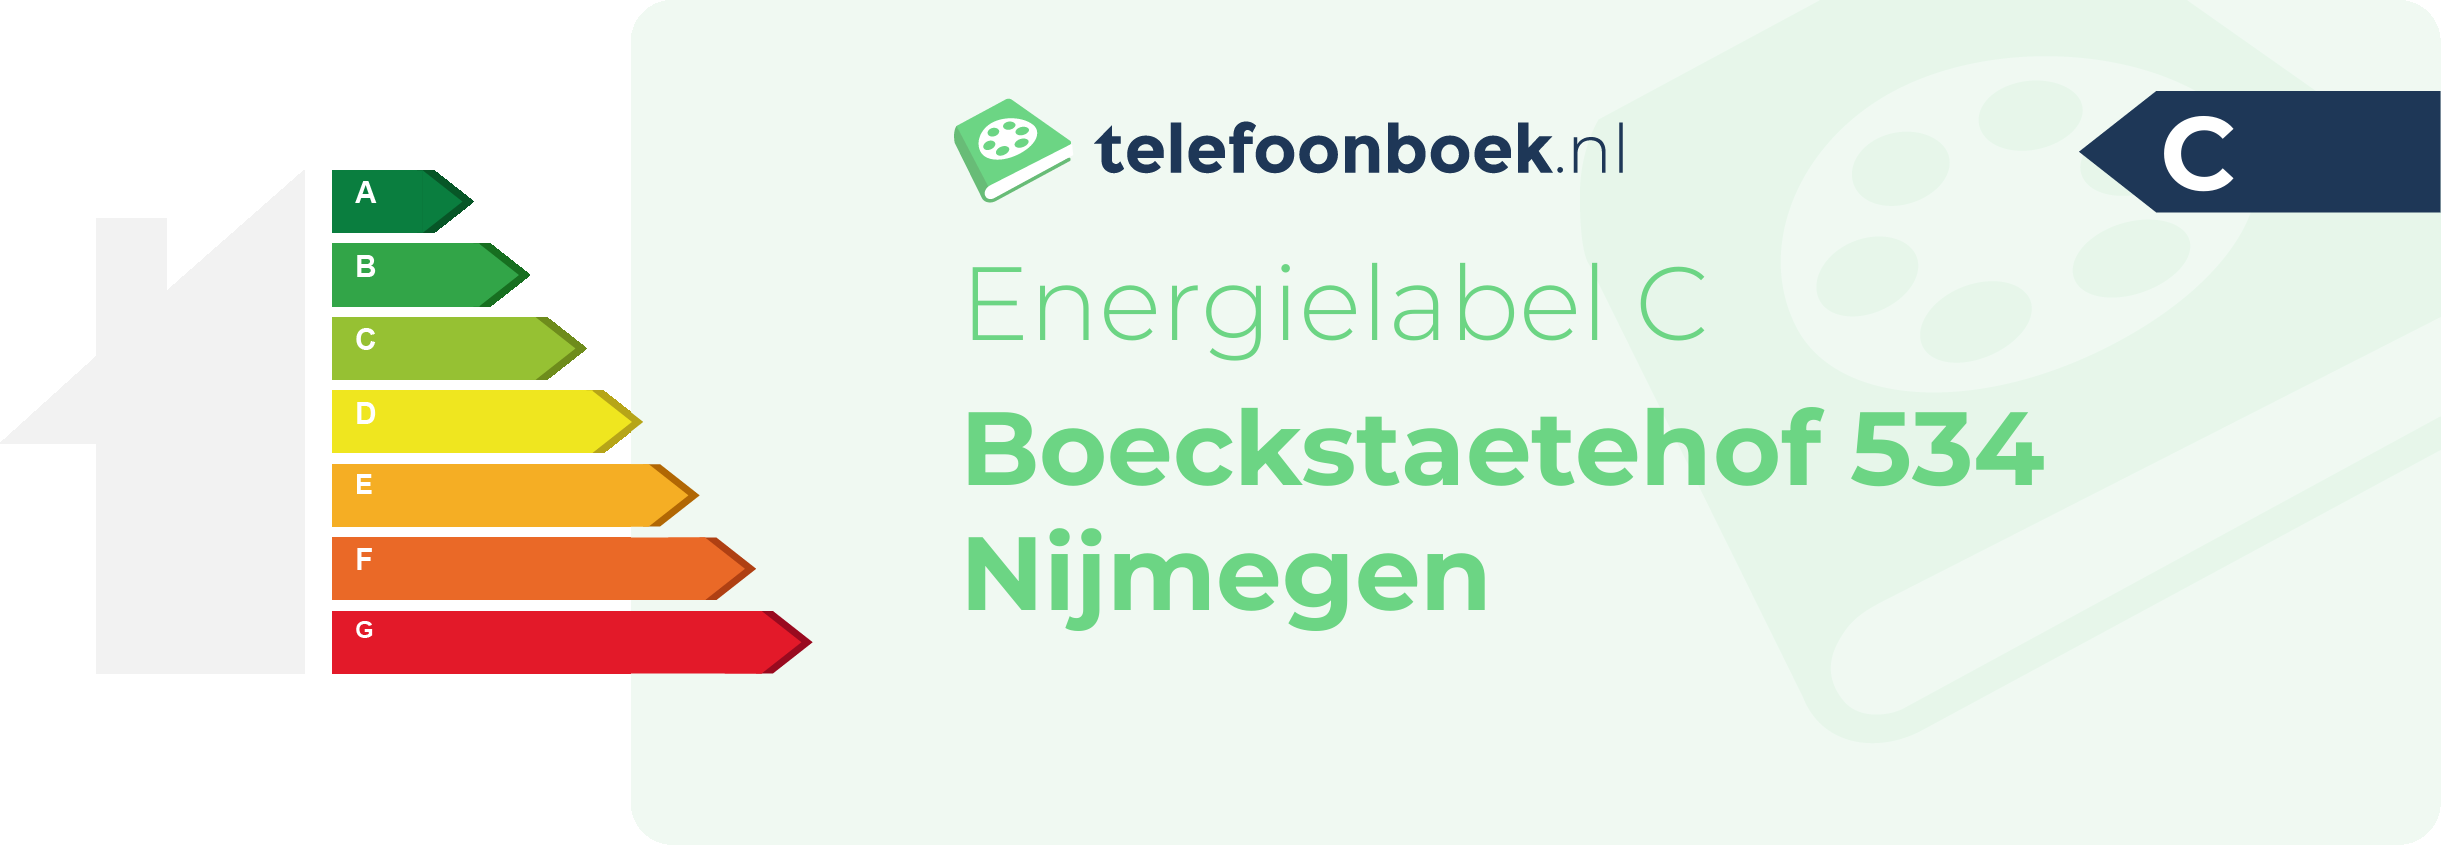 Energielabel Boeckstaetehof 534 Nijmegen